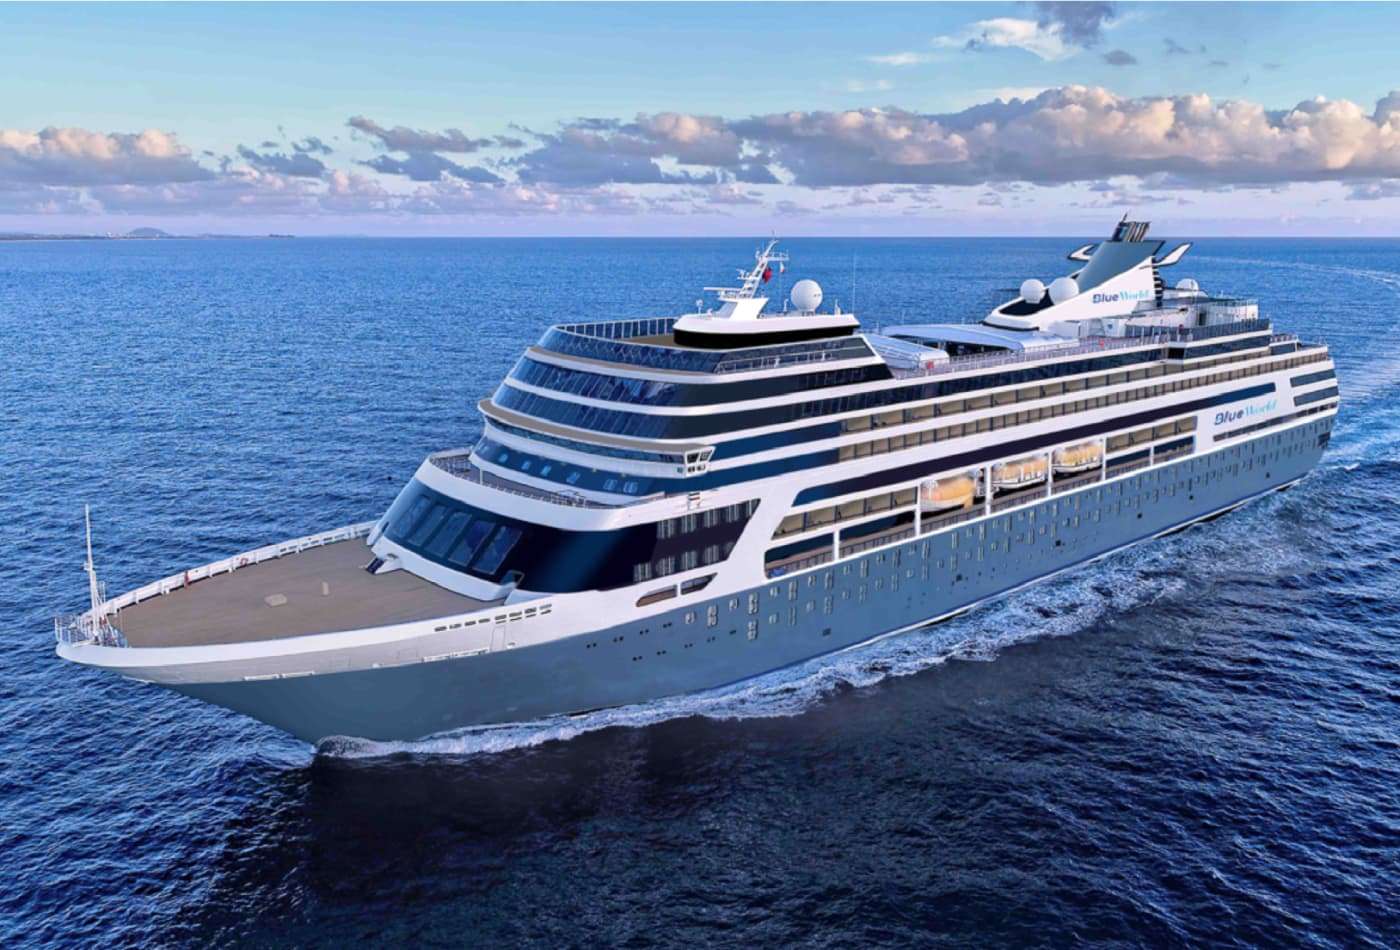 Blue World Voyages selling luxury residences on cruise ship